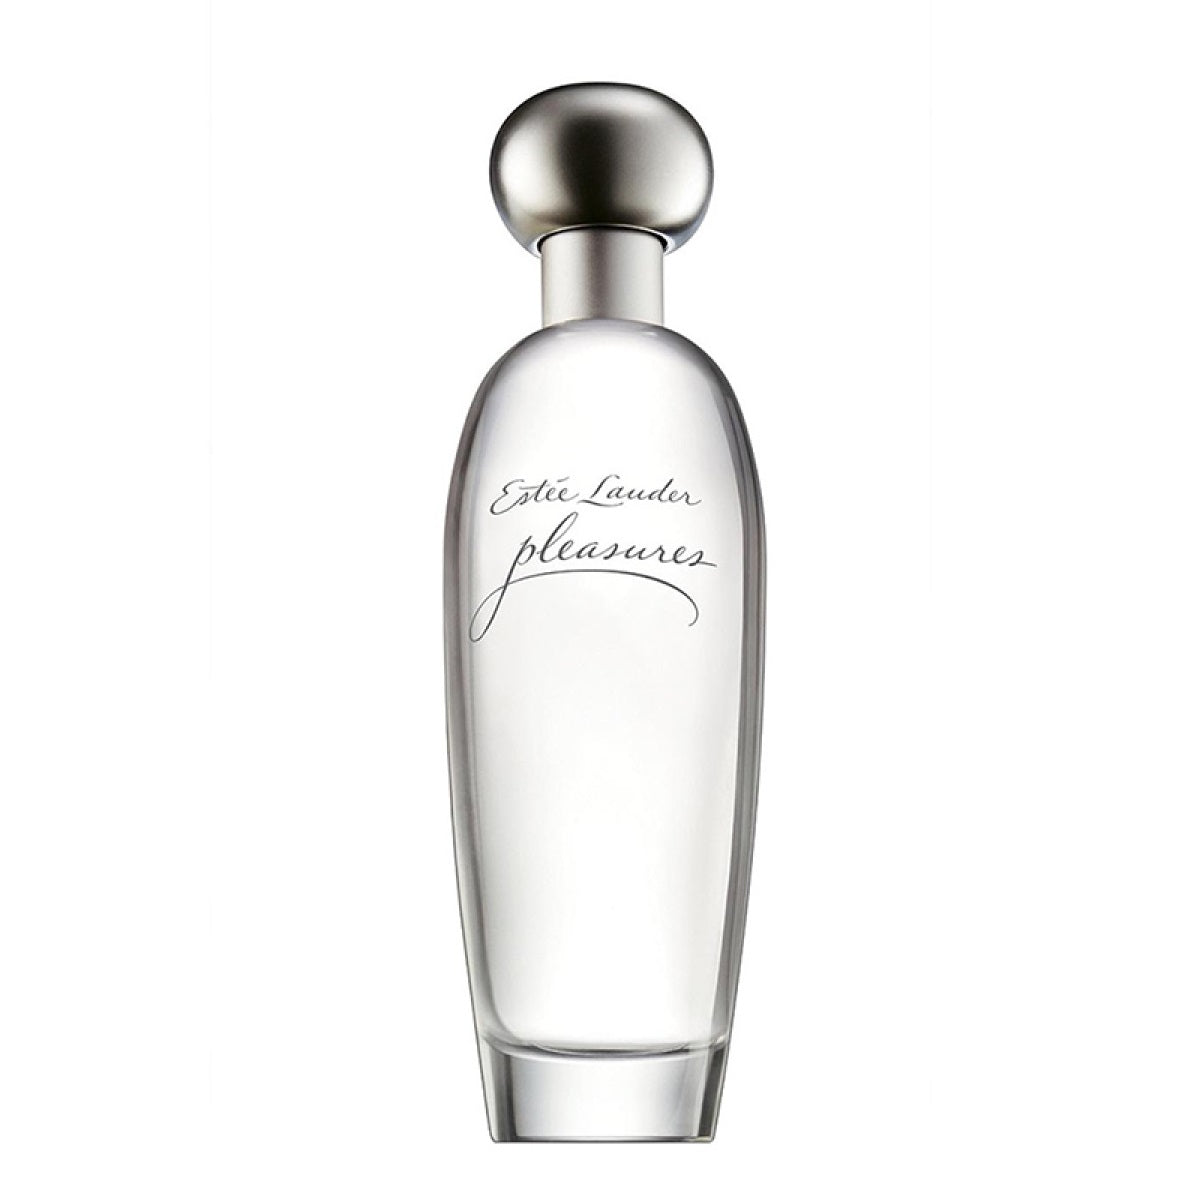 Estée Lauder Pleasures парфюмированная вода спрей 30мл цена и фото